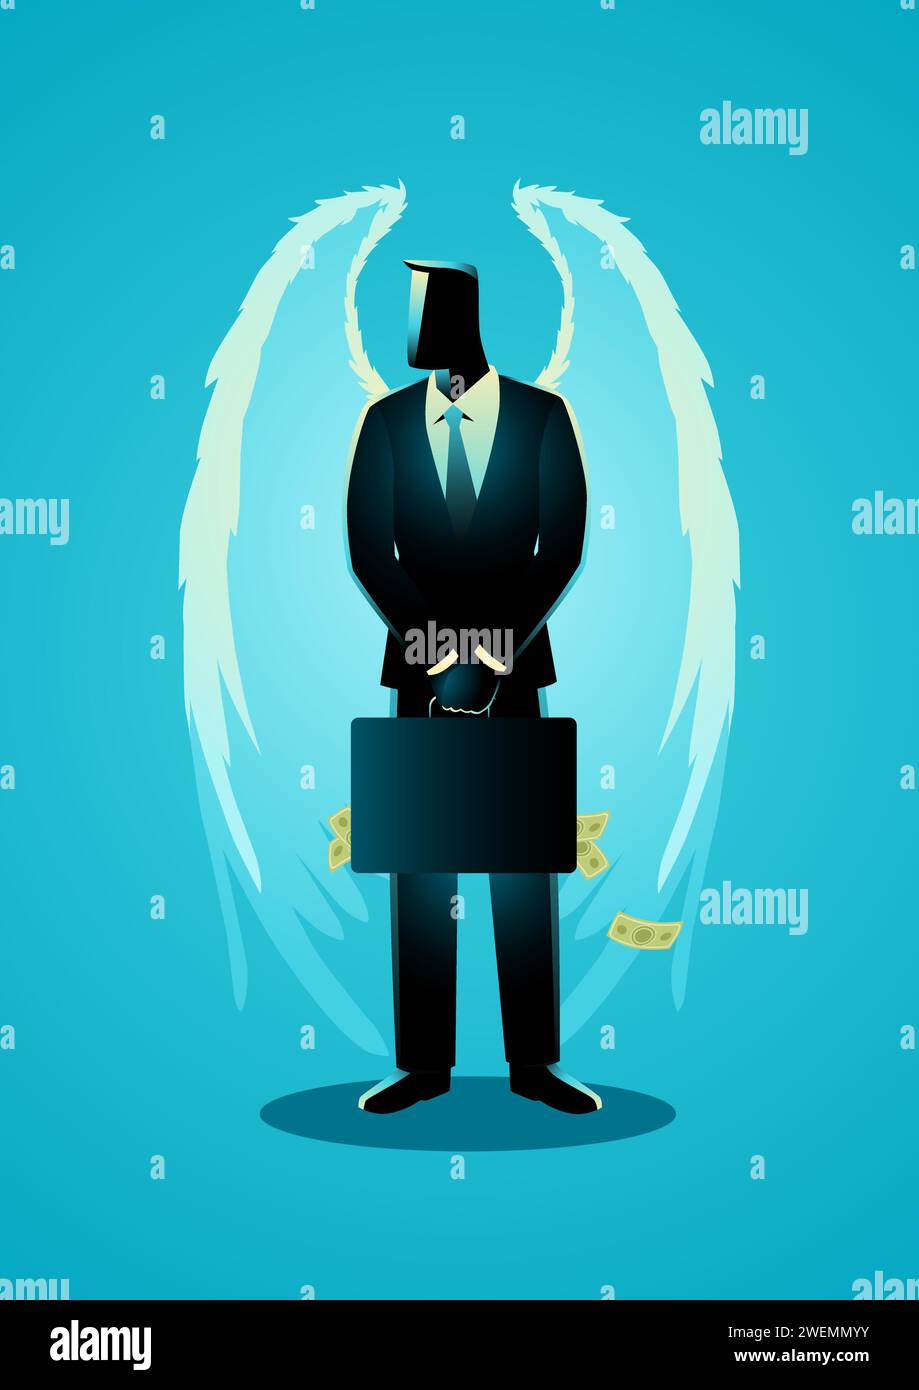 Illustration vectorielle de concept d'entreprise d'homme d'affaires avec des ailes d'ange portant valise pleine d'argent, concept d'investisseur d'ange Illustration de Vecteur